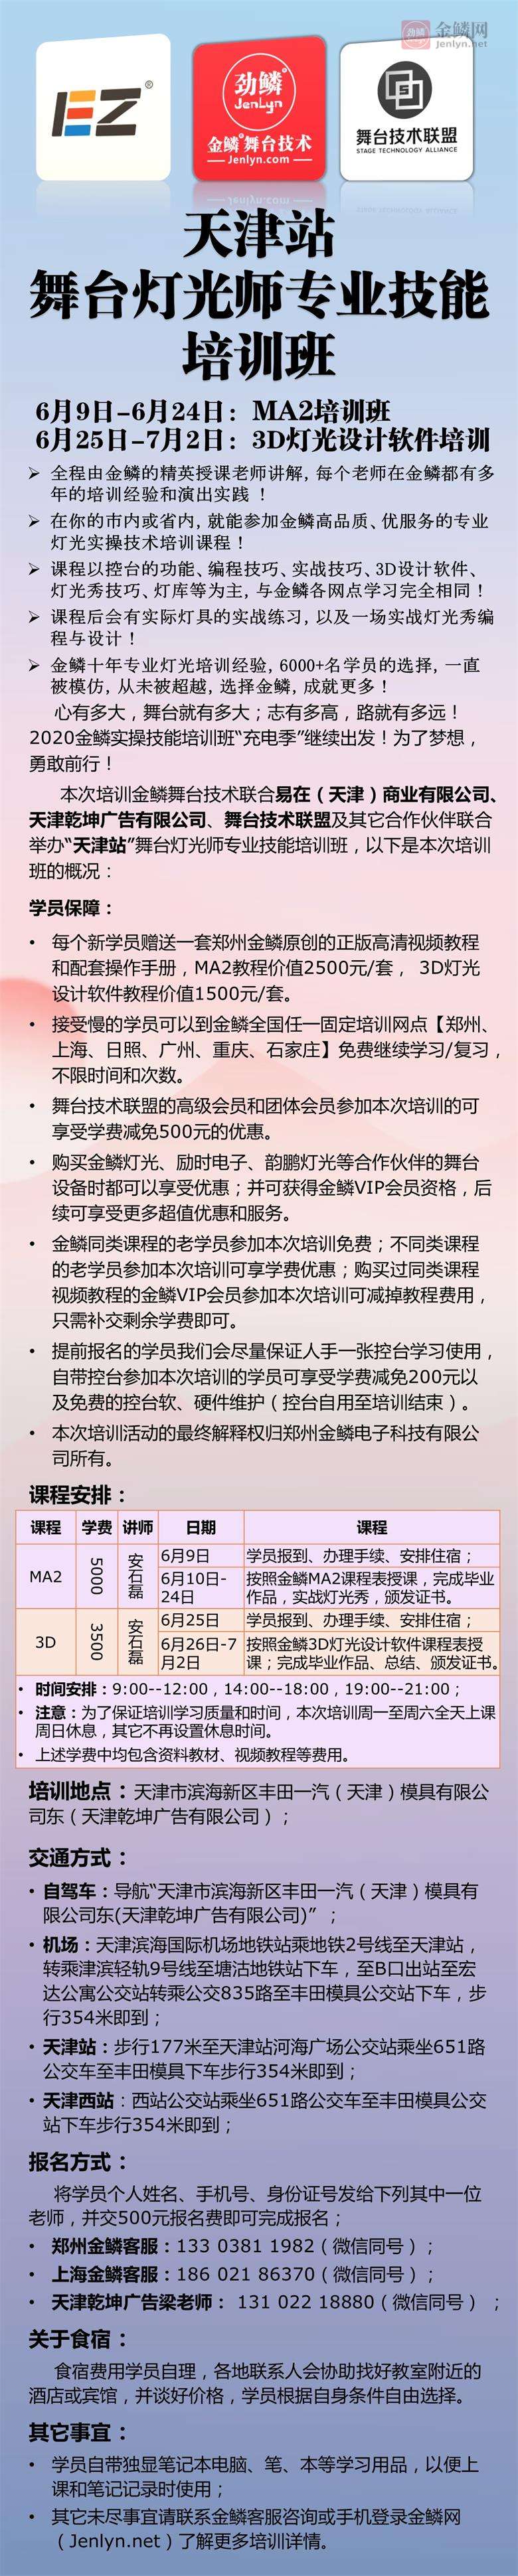 20200609天津站培训1.jpg